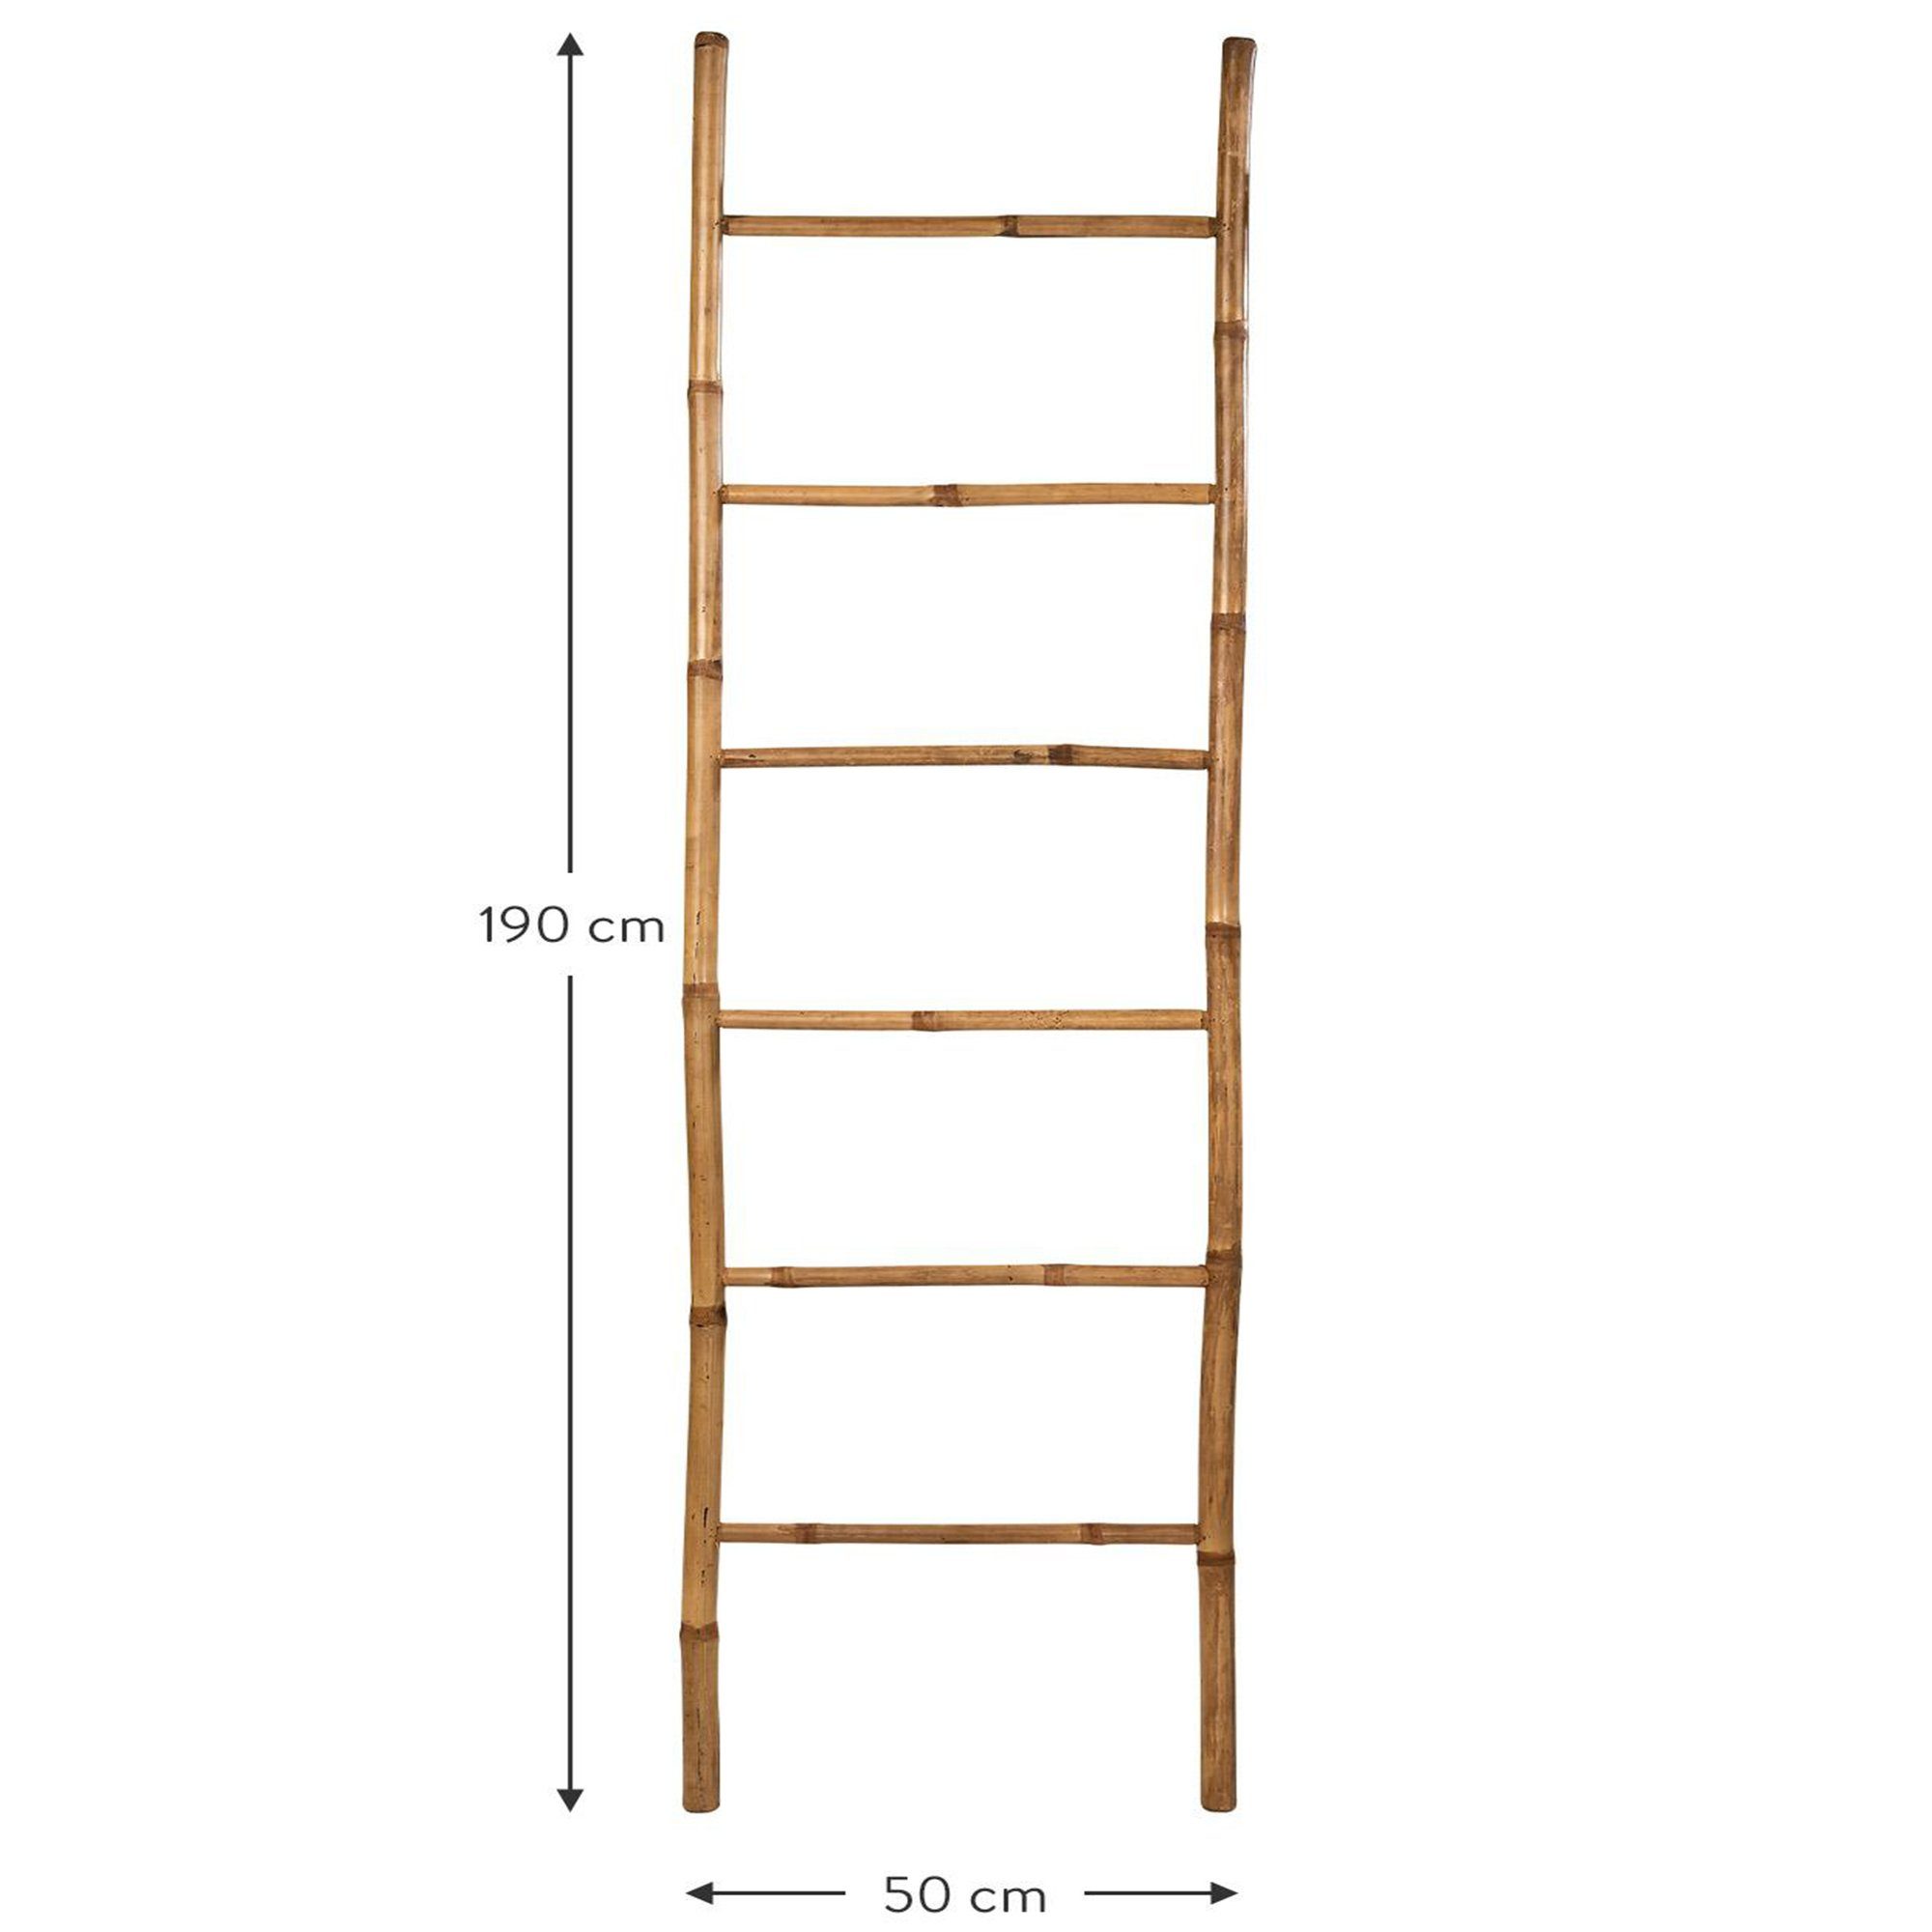 190cm, 6 Leiter-Regal Sprossen Bambus Dekoleiter Sprossen dasmöbelwerk 6 Leiterregal Handtuchleiter